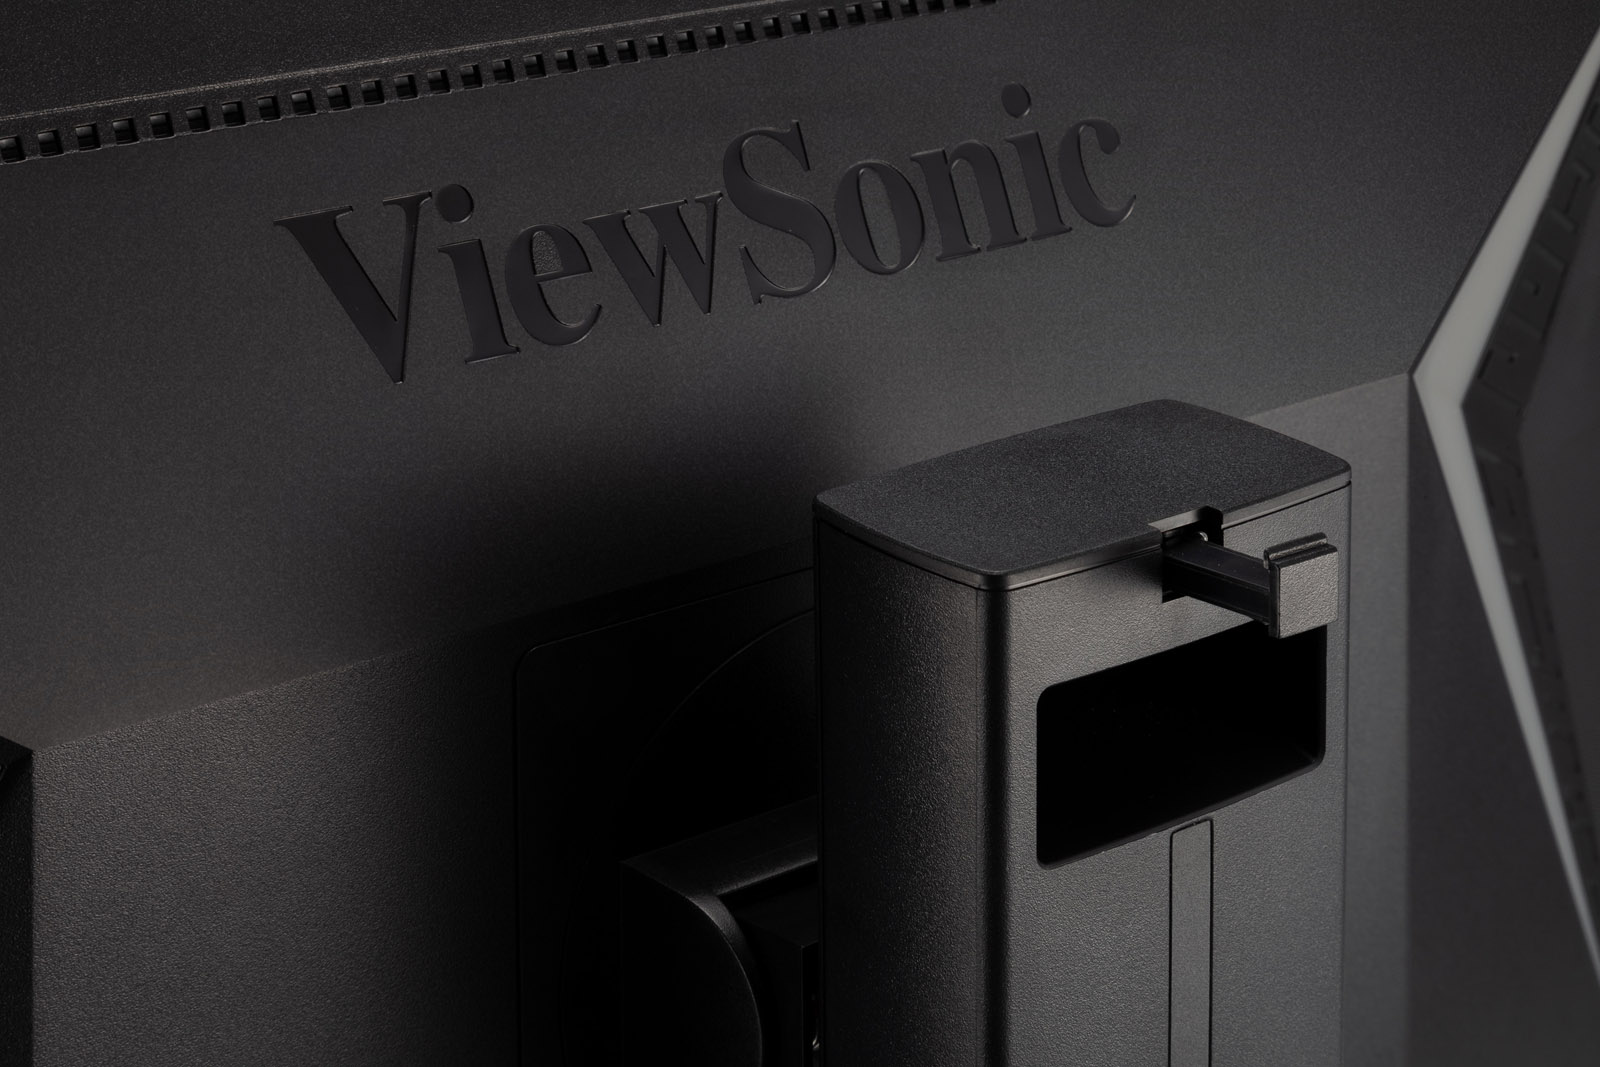 ViewSonic XG240R : un écran 144 Hz et RGB - HardwareCooking